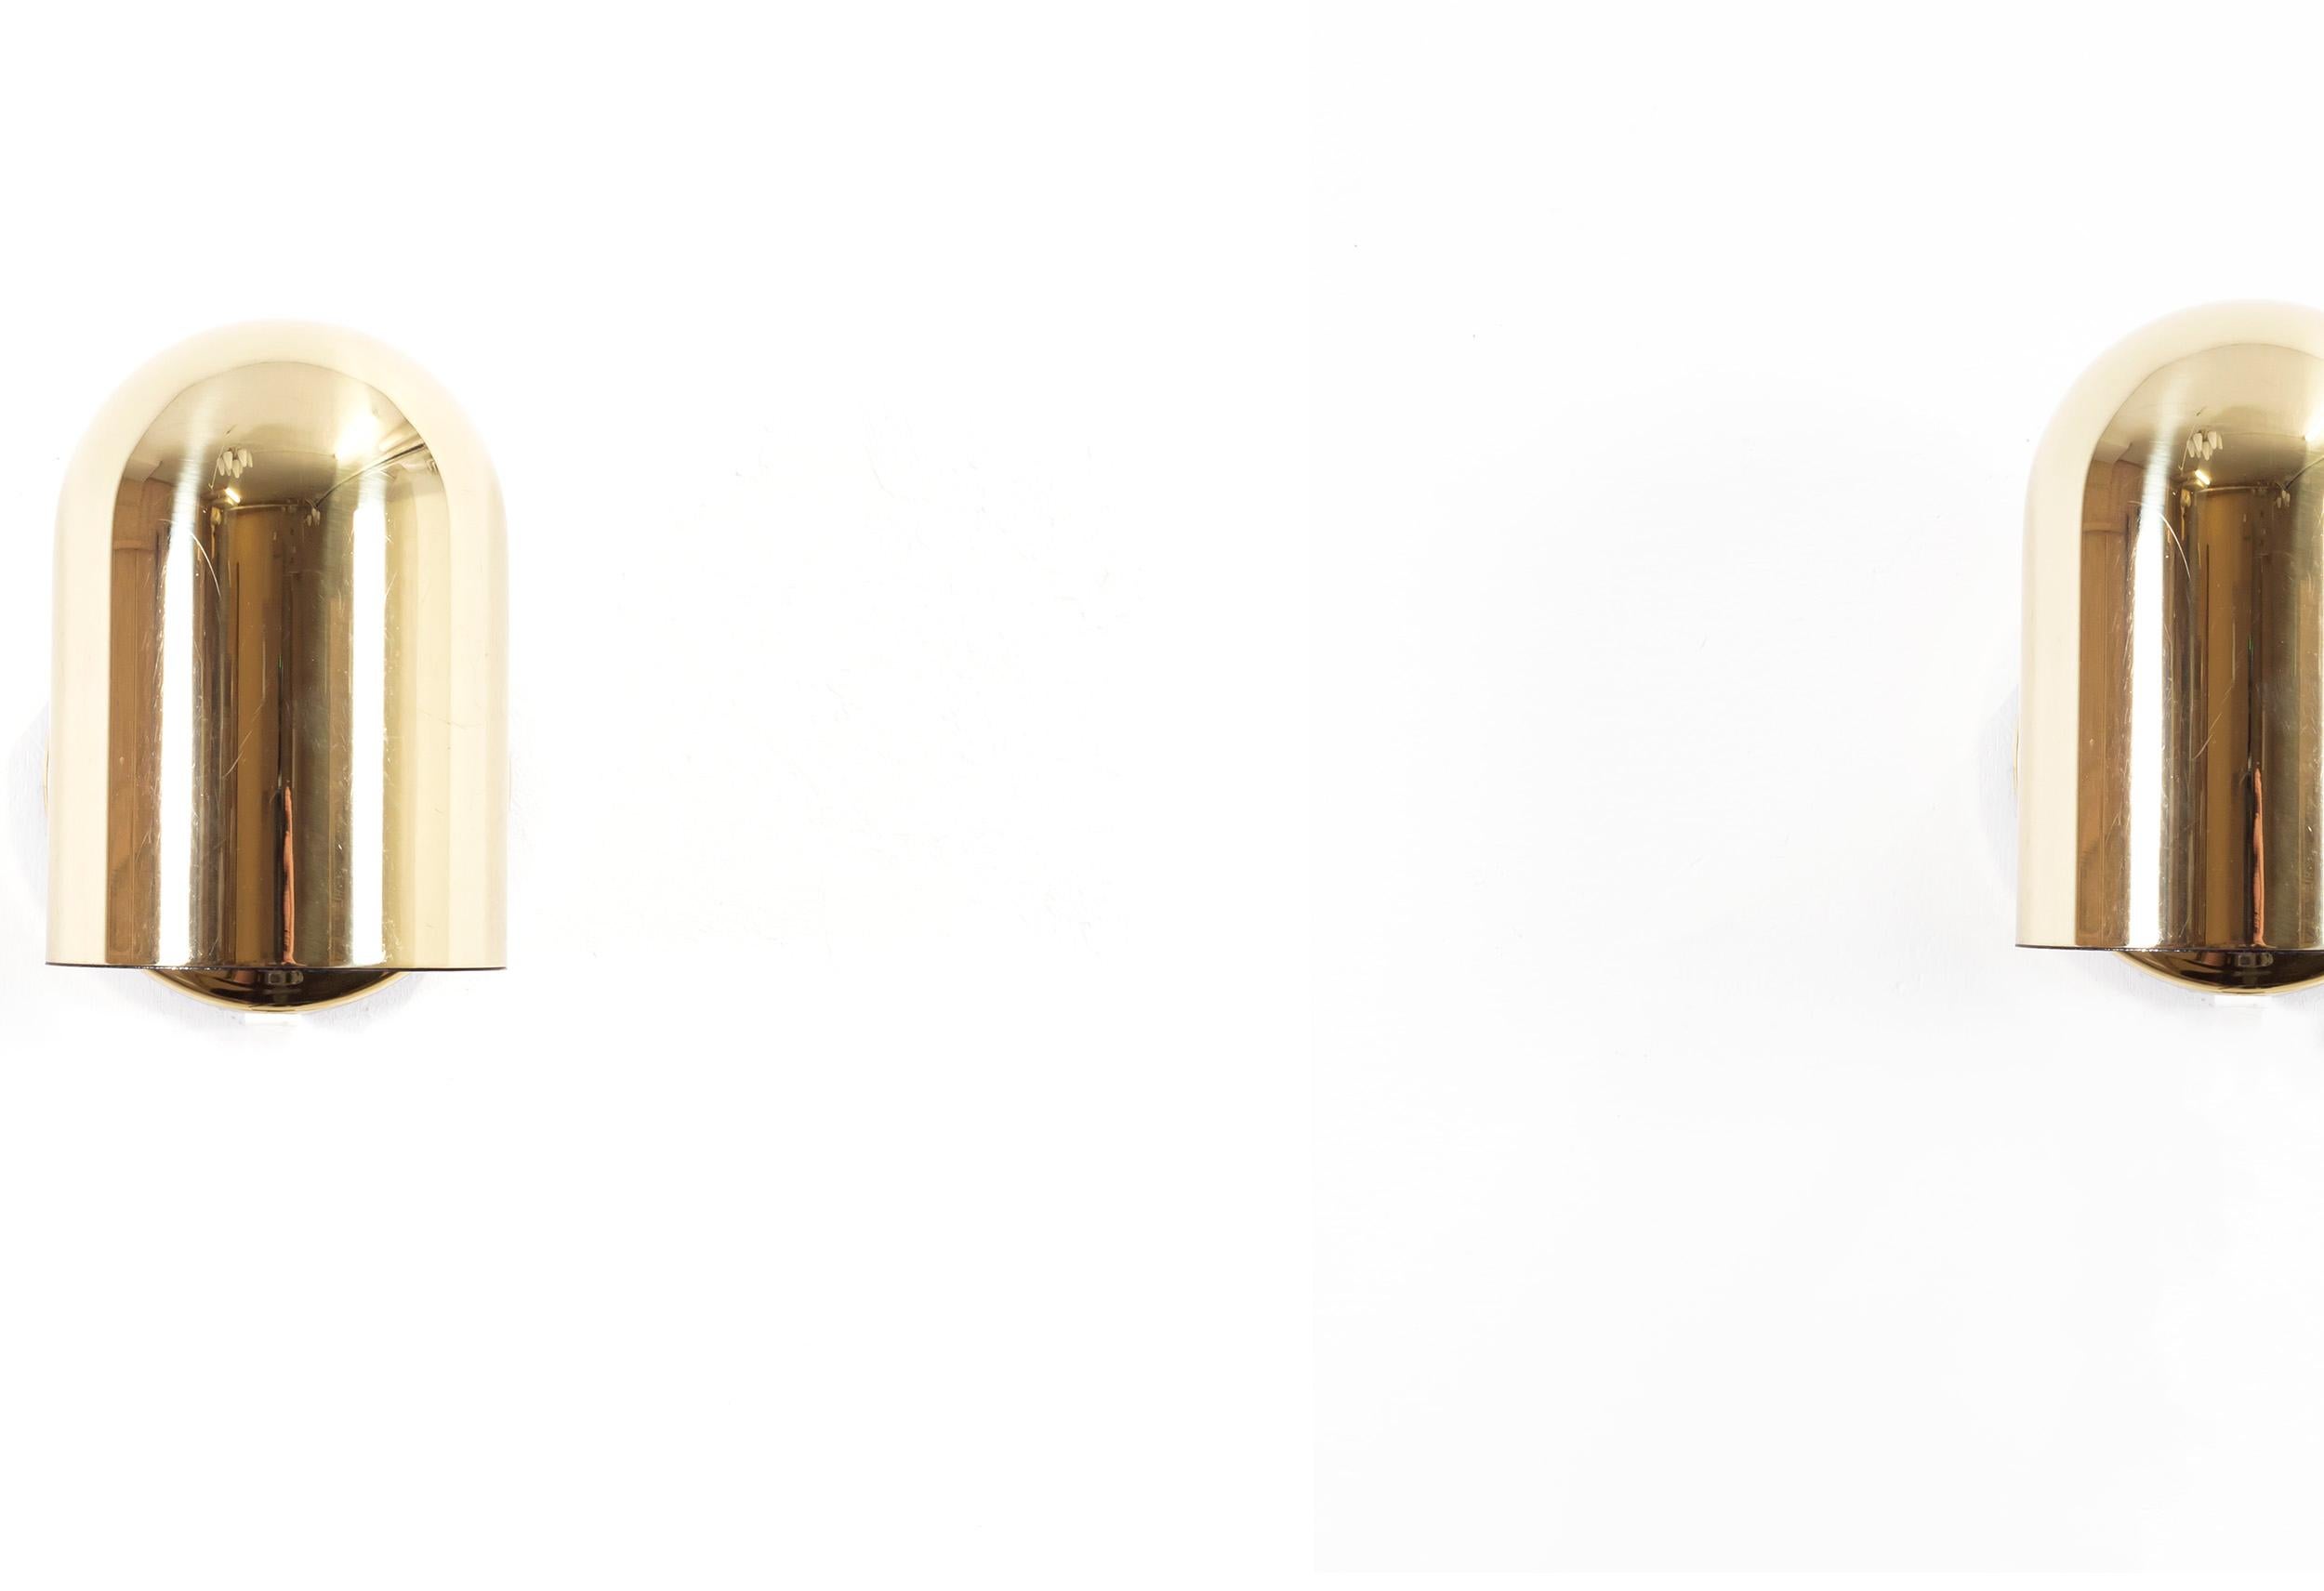 Wunderschöne und minimalistische Wandlampen aus Messing. Entworfen von Jonas Hidle und hergestellt in Norwegen von Høvik Lys AS ab ca. 1970 zweite Hälfte. Beide Lampen sind voll funktionsfähig und in gutem Vintage-Zustand. Jede Lampe ist mit einer